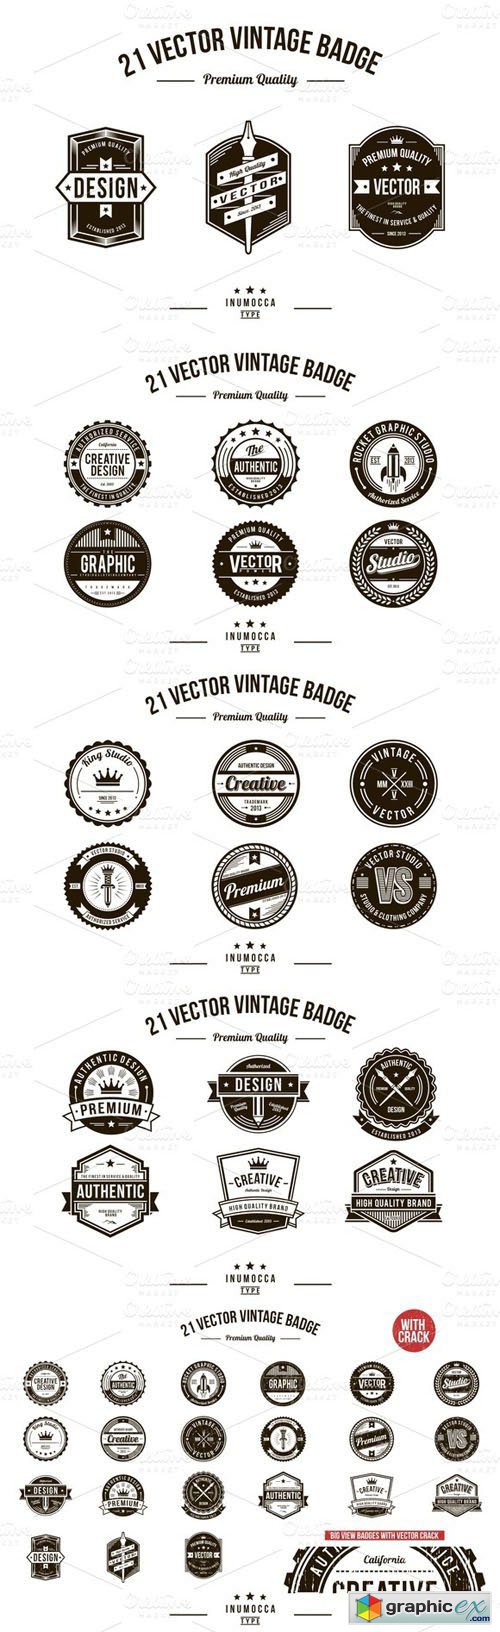 21 Vintage Badges (CLEAR & CRACK)